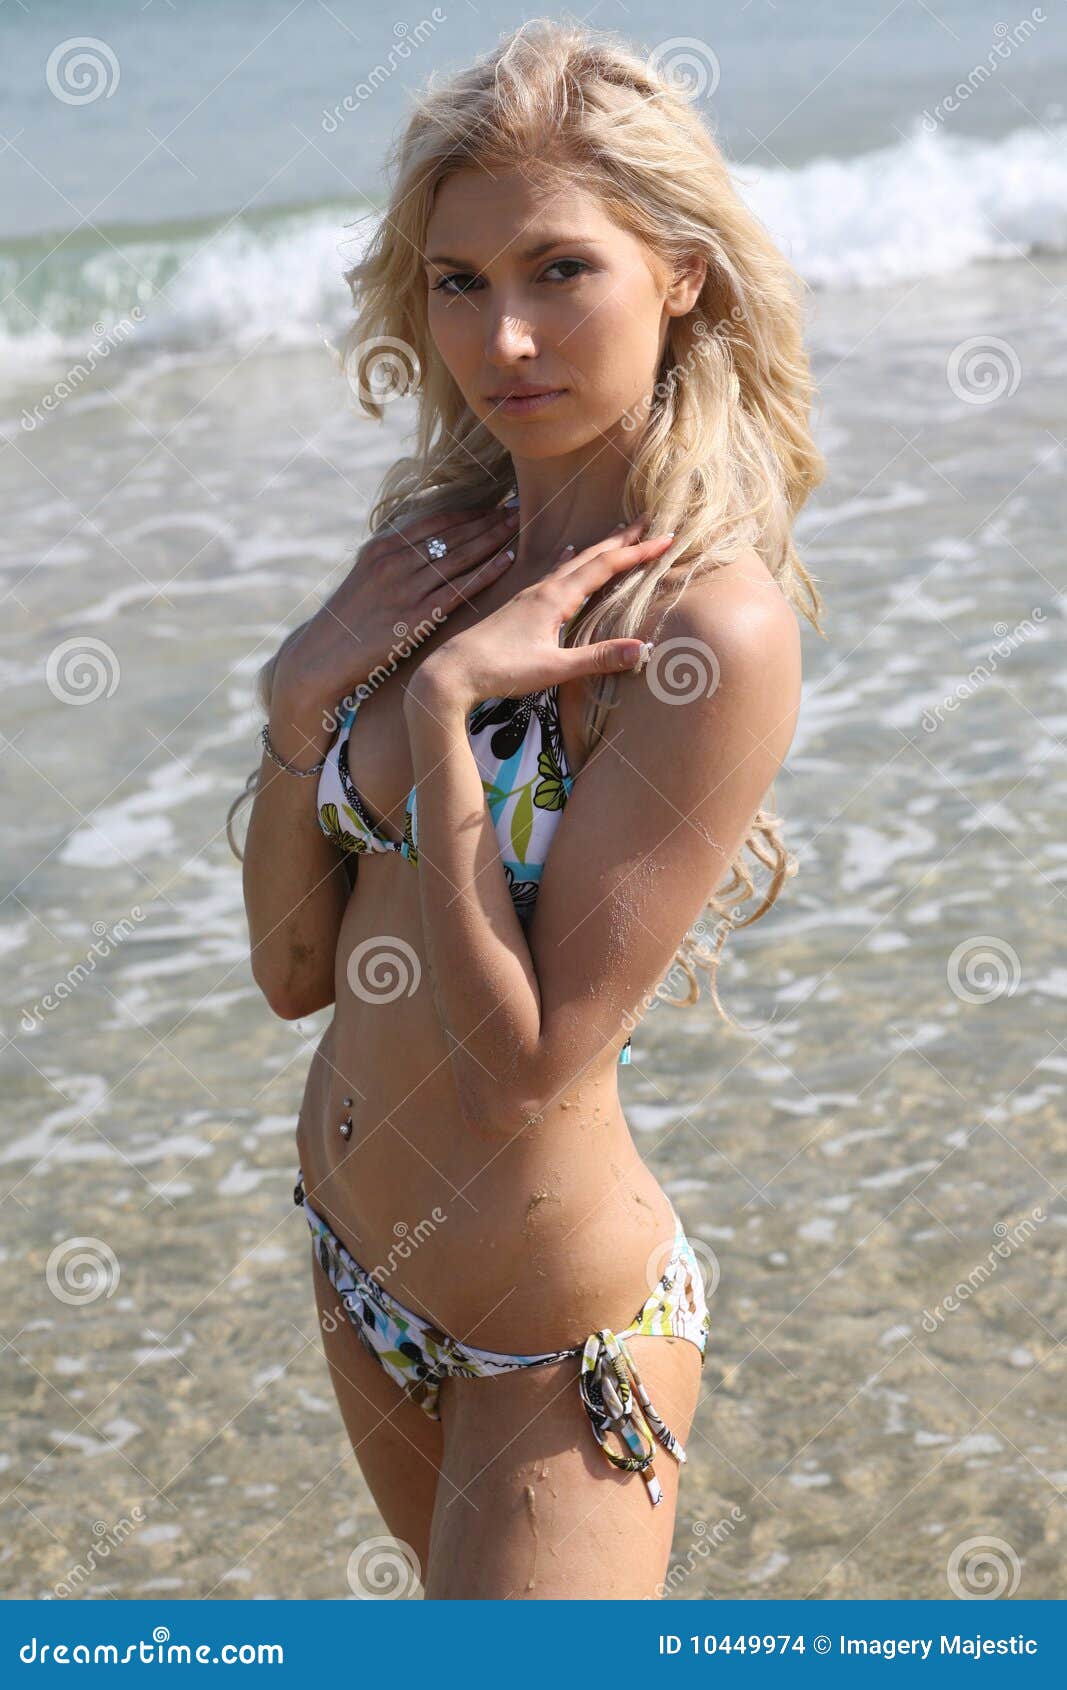 Lady in bikini stock photo